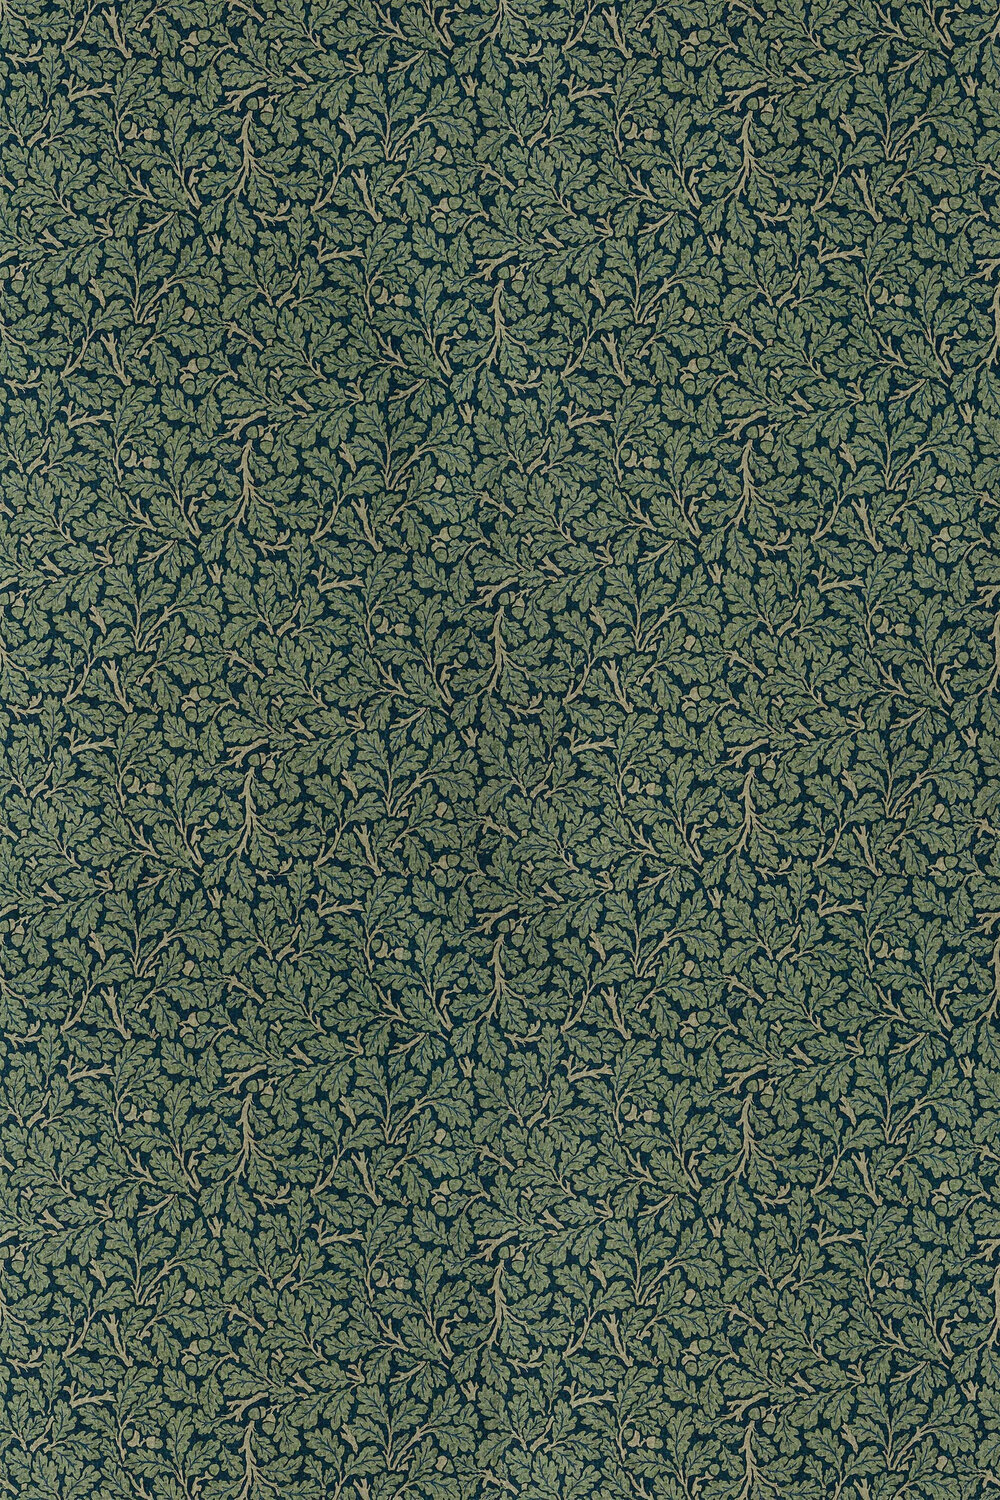 Oak Fabric - Teal / Slate - by Morris